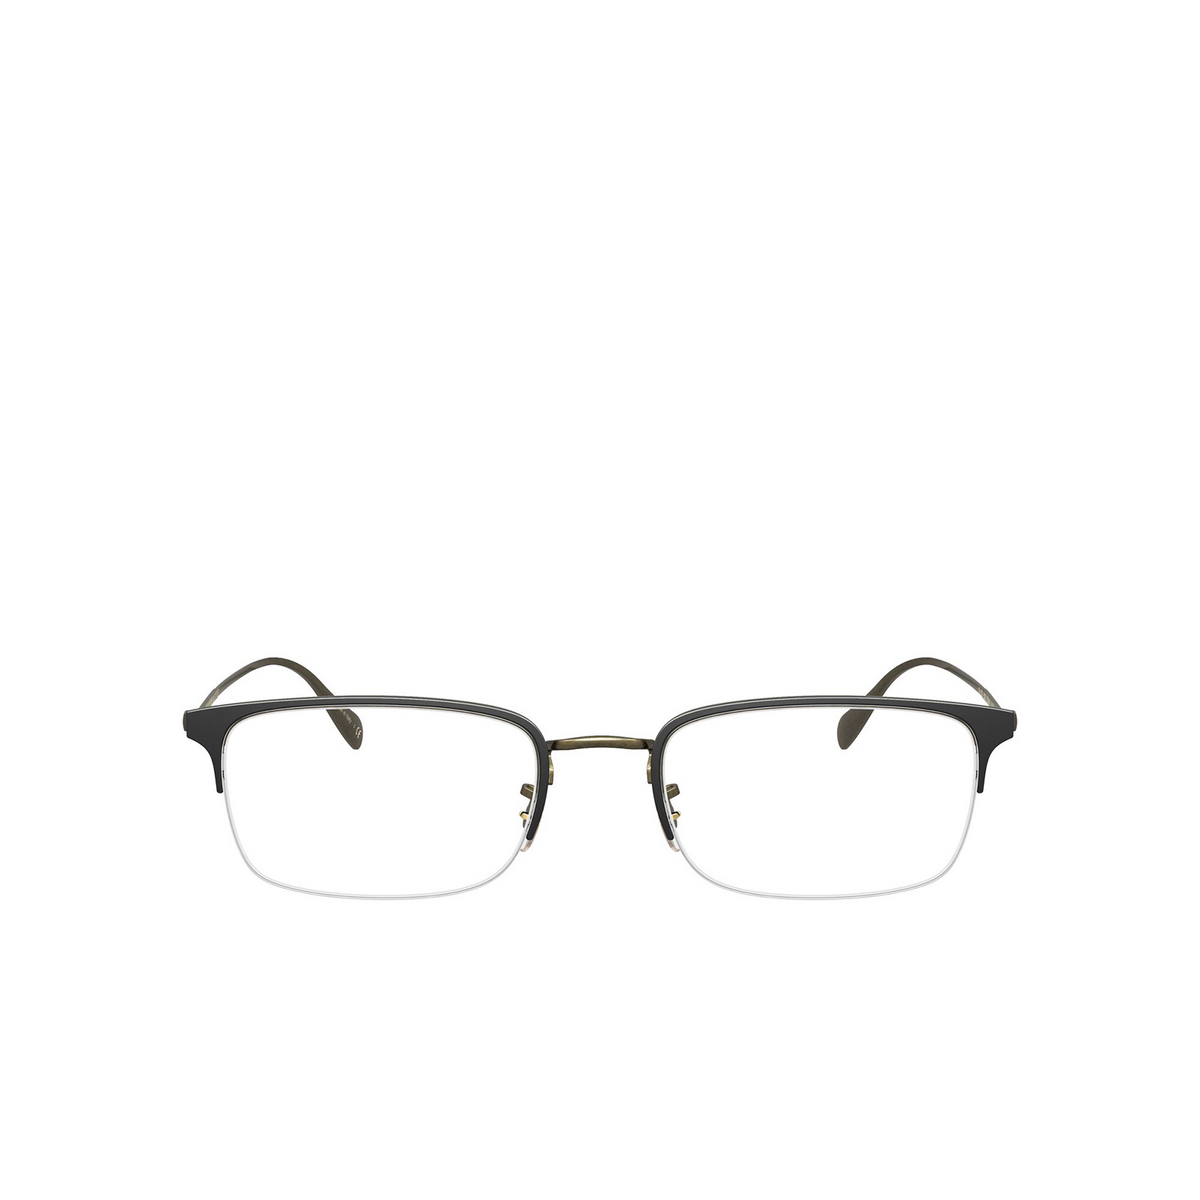 Oliver Peoples® Rectangle Eyeglasses: Codner OV1273 color Matte Black / Antique Gold 5302 - front view.